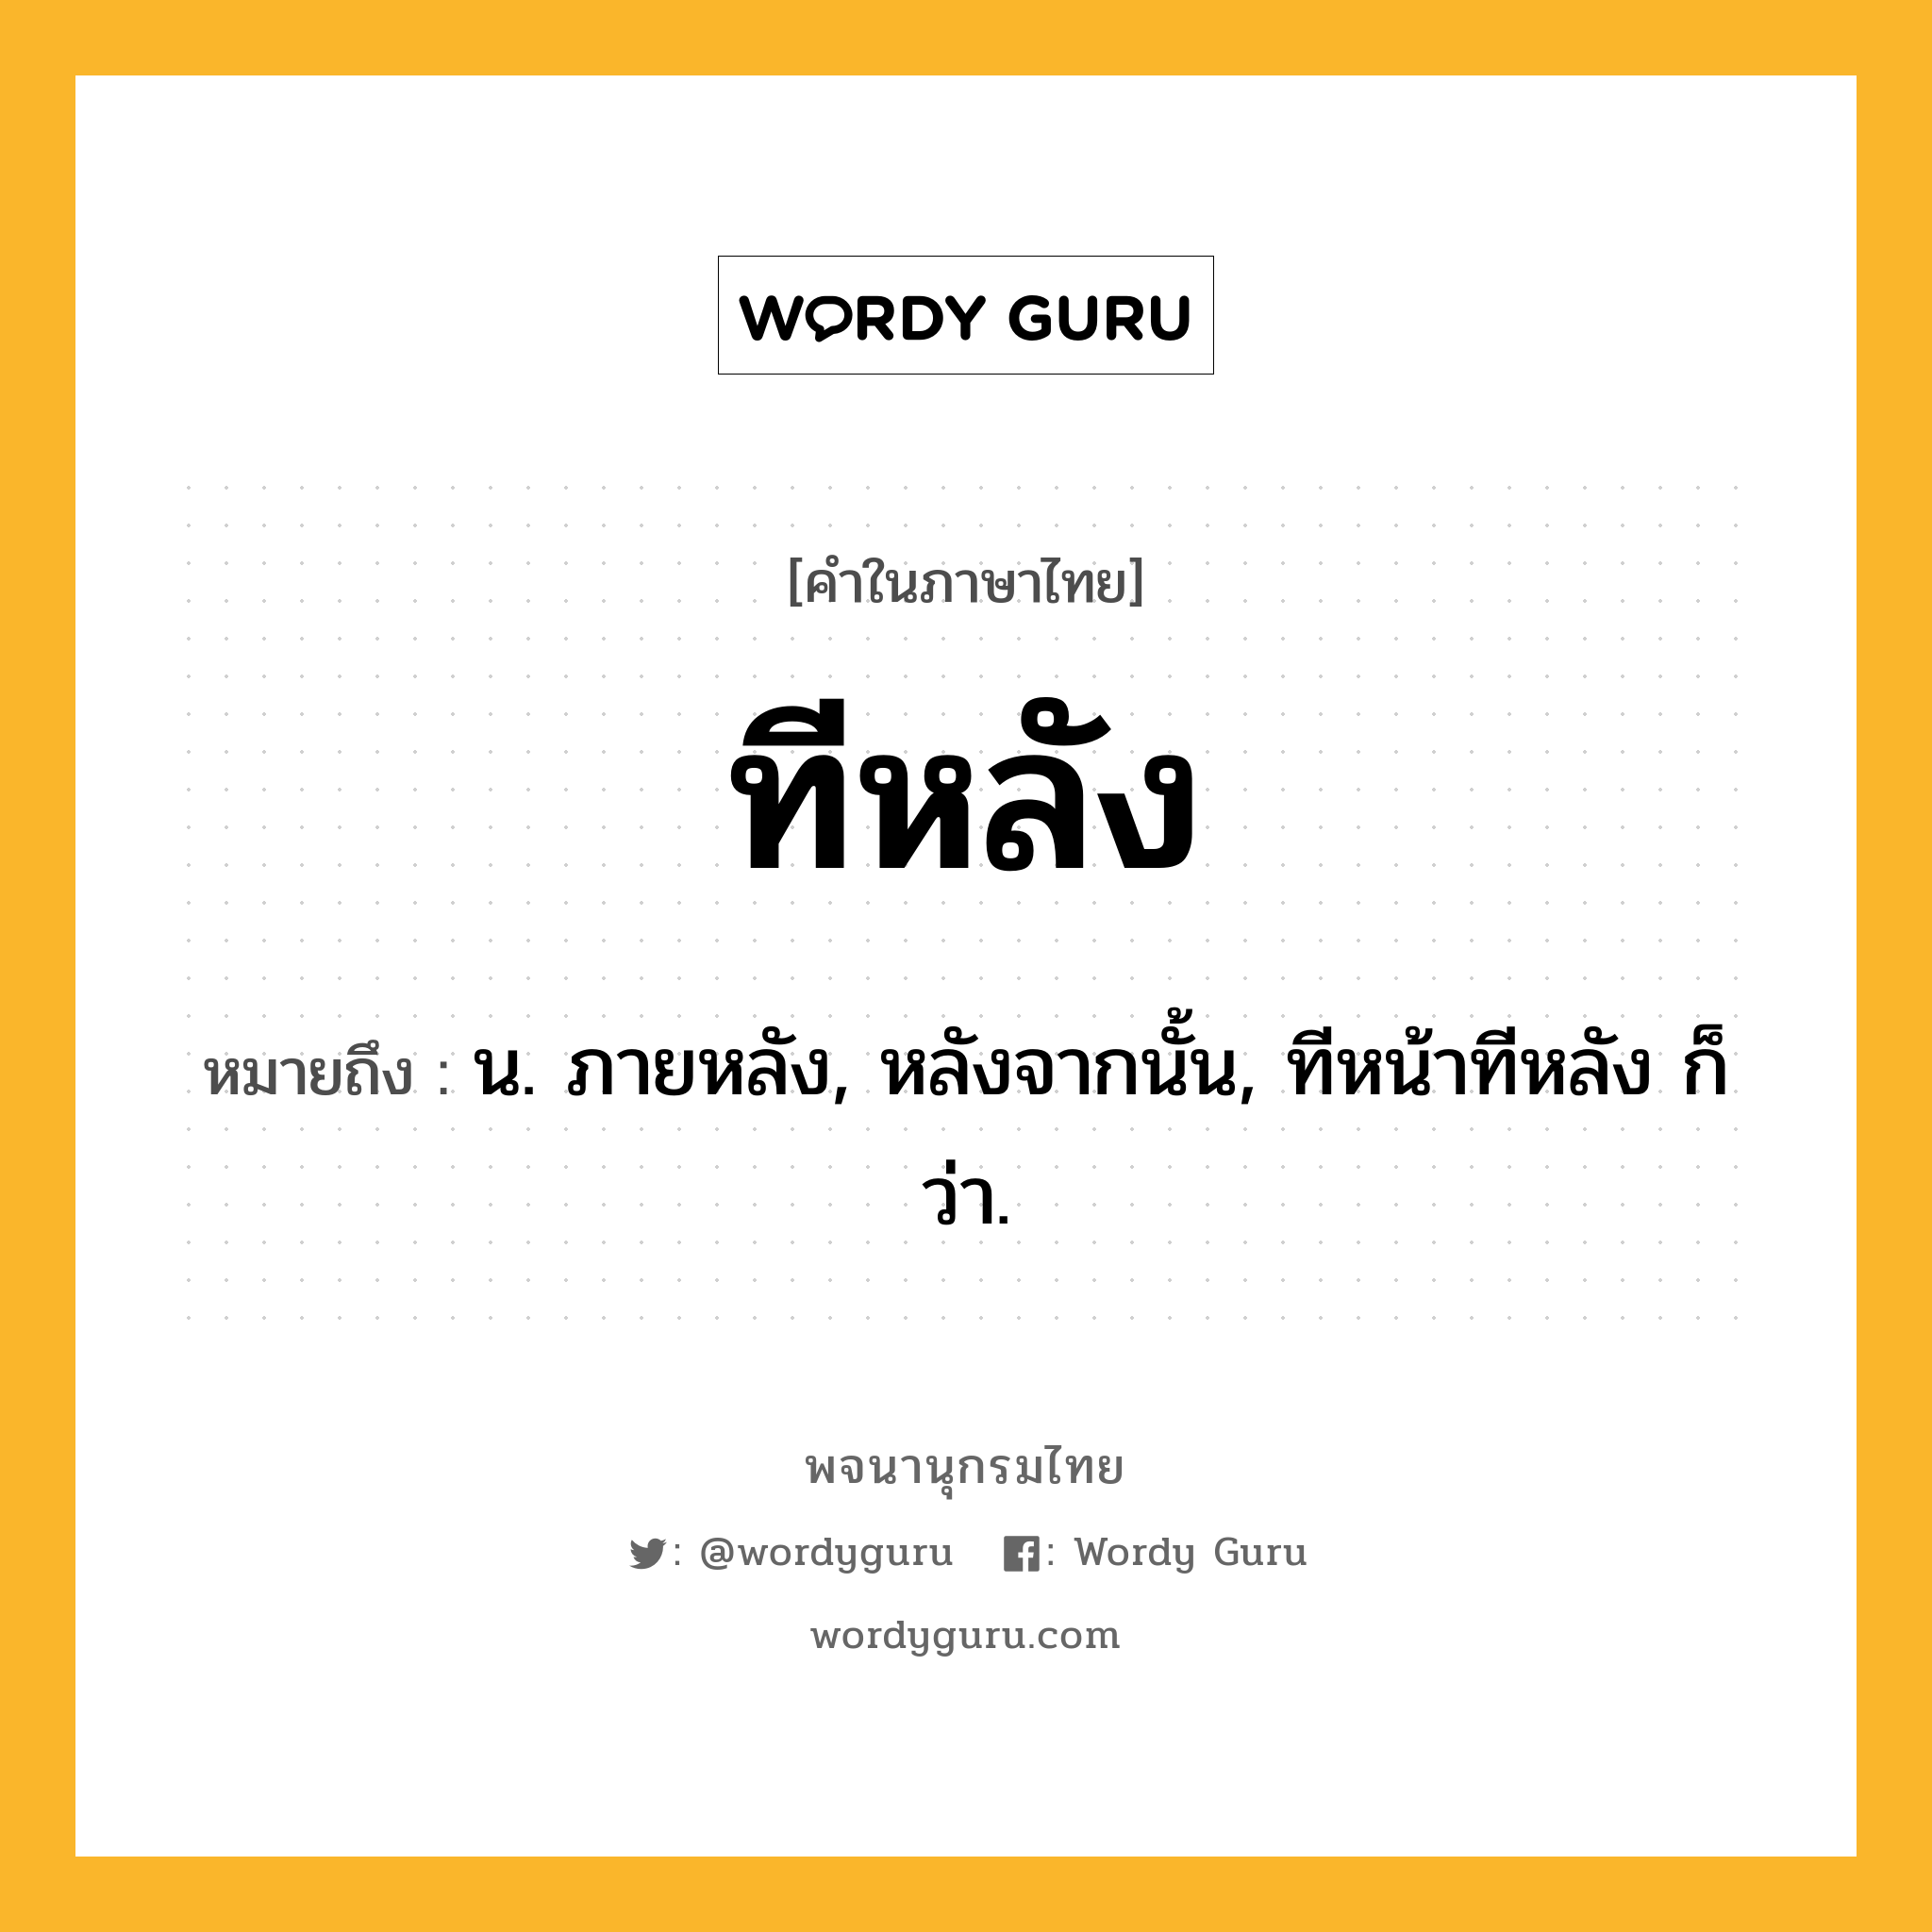 ทีหลัง หมายถึงอะไร?, คำในภาษาไทย ทีหลัง หมายถึง น. ภายหลัง, หลังจากนั้น, ทีหน้าทีหลัง ก็ว่า.